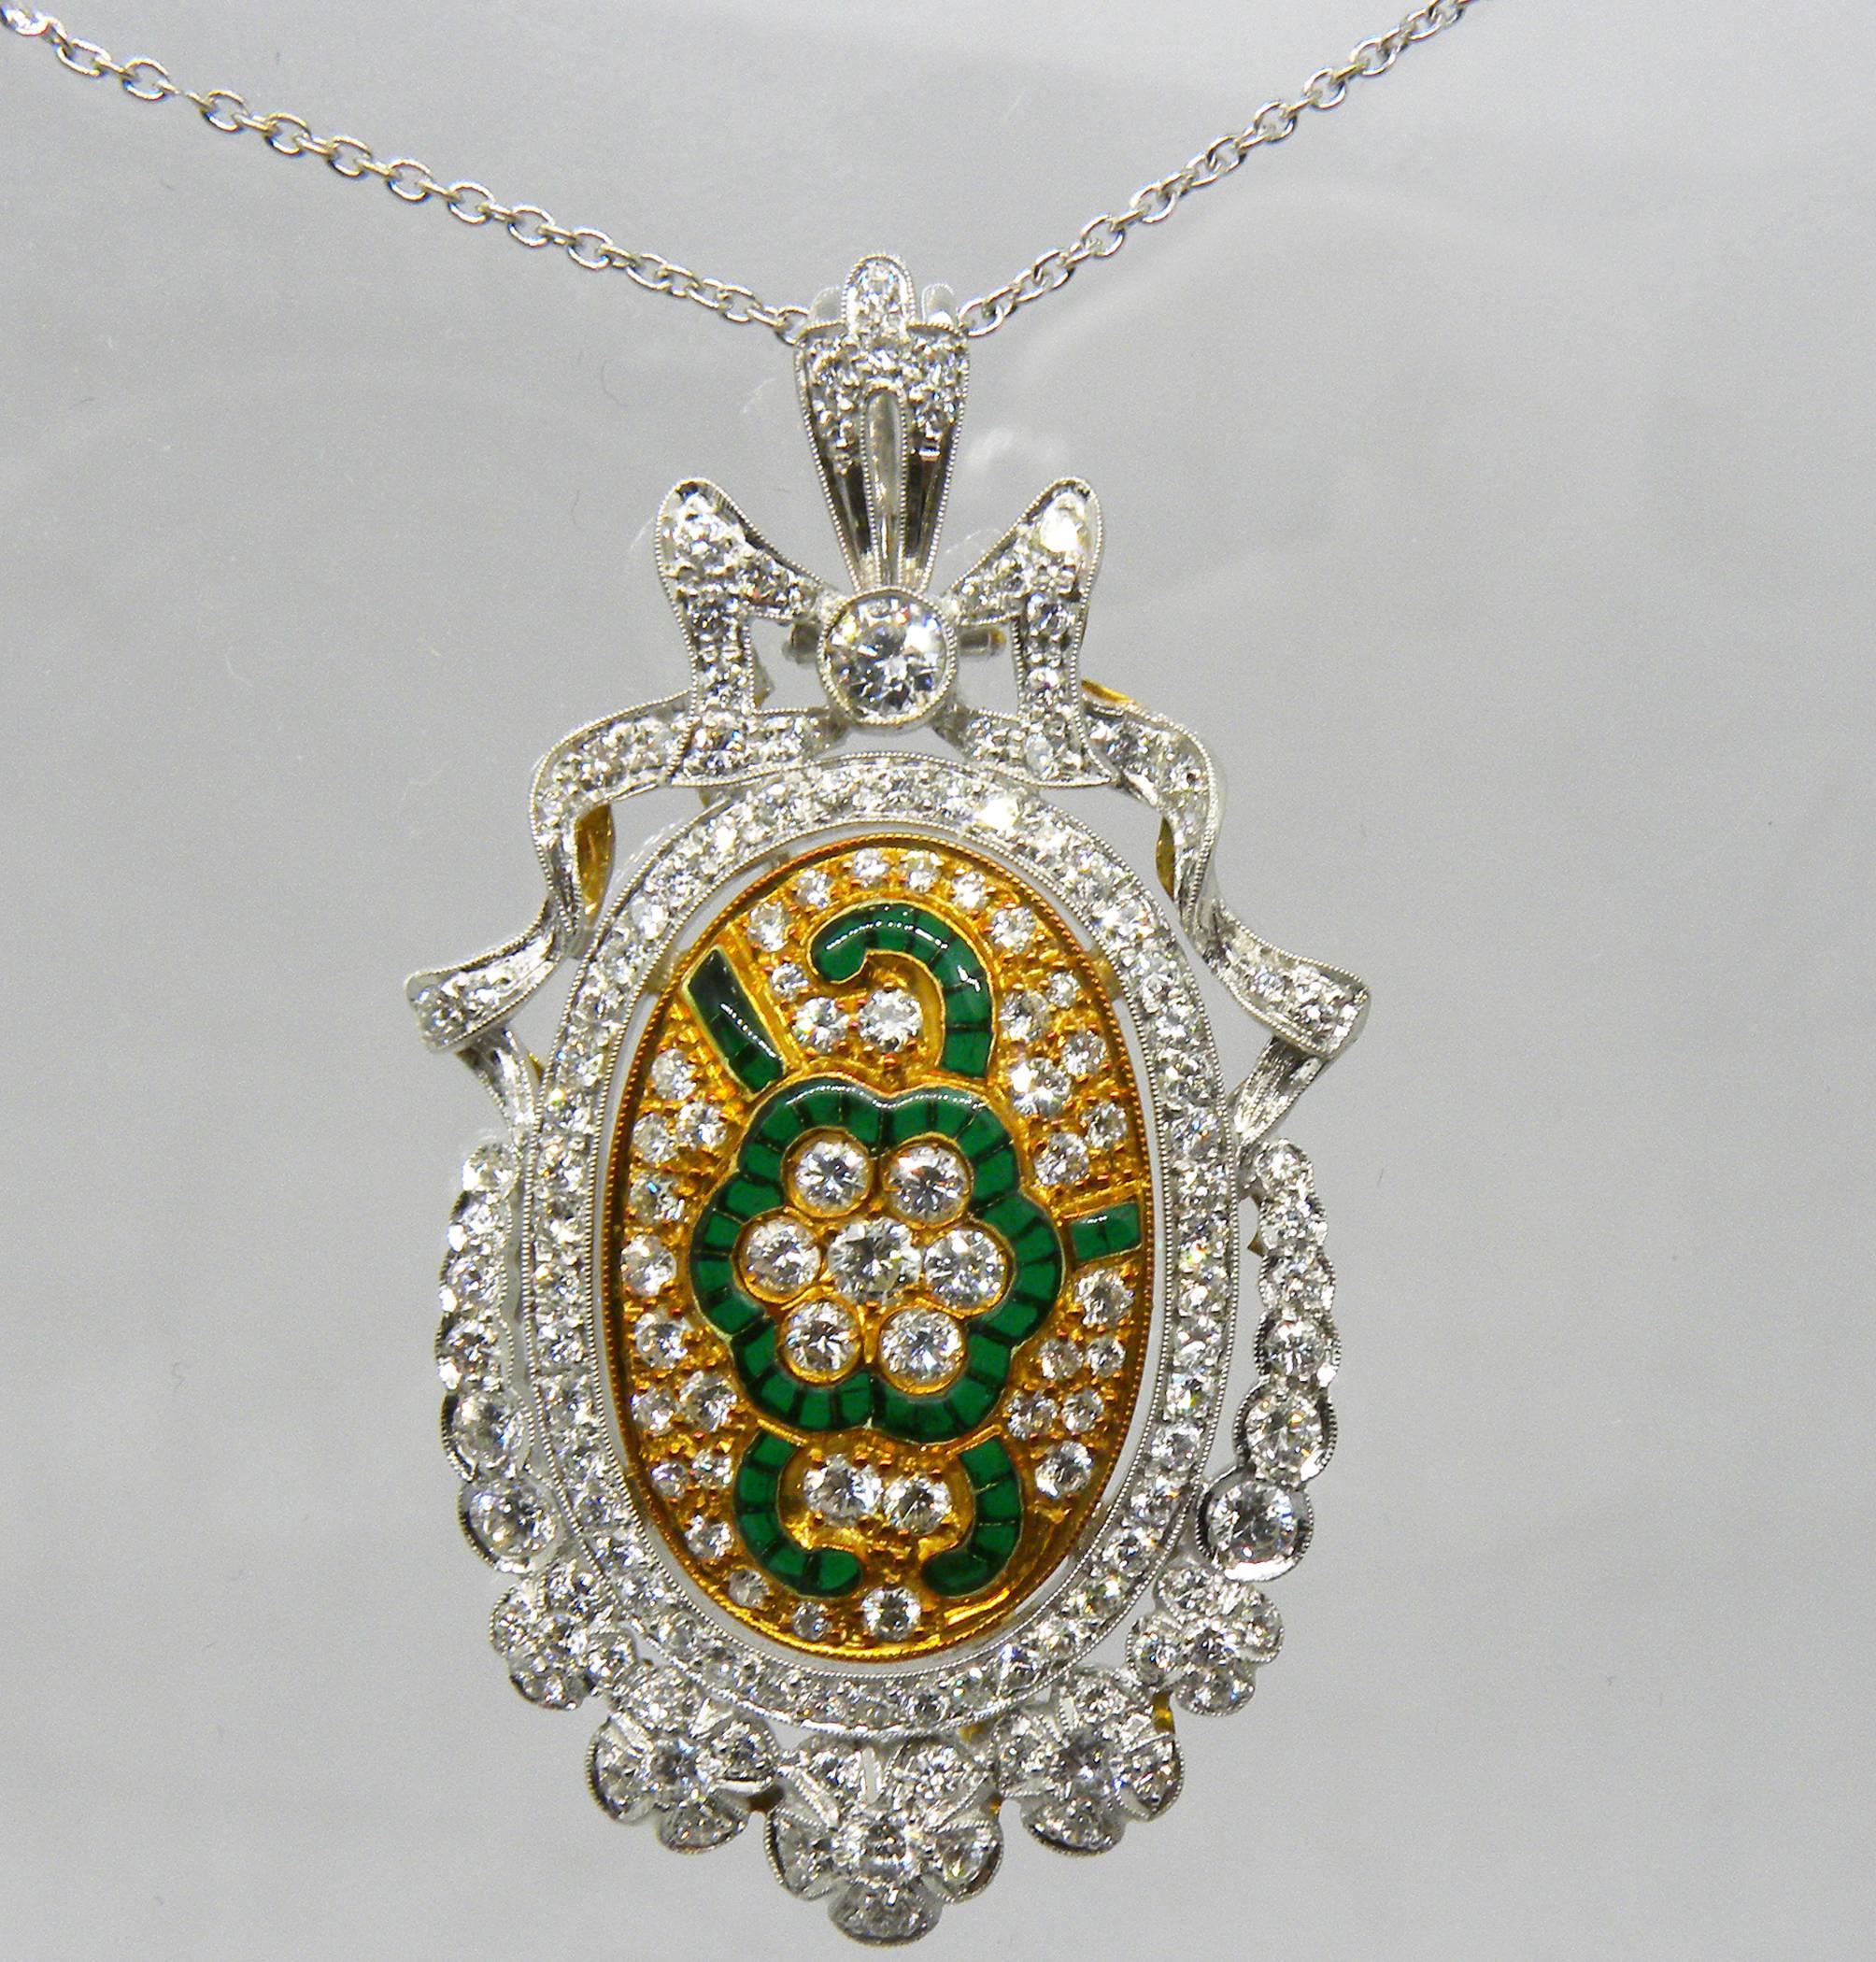 Superbe broche de style Art Nouveau (elle peut également être portée en pendentif) : près de 2 carats de diamant blanc de qualité supérieure (1.98, D-E, IF) combinés à un magnifique émail vert en plique à jour, dans une monture en or blanc et jaune